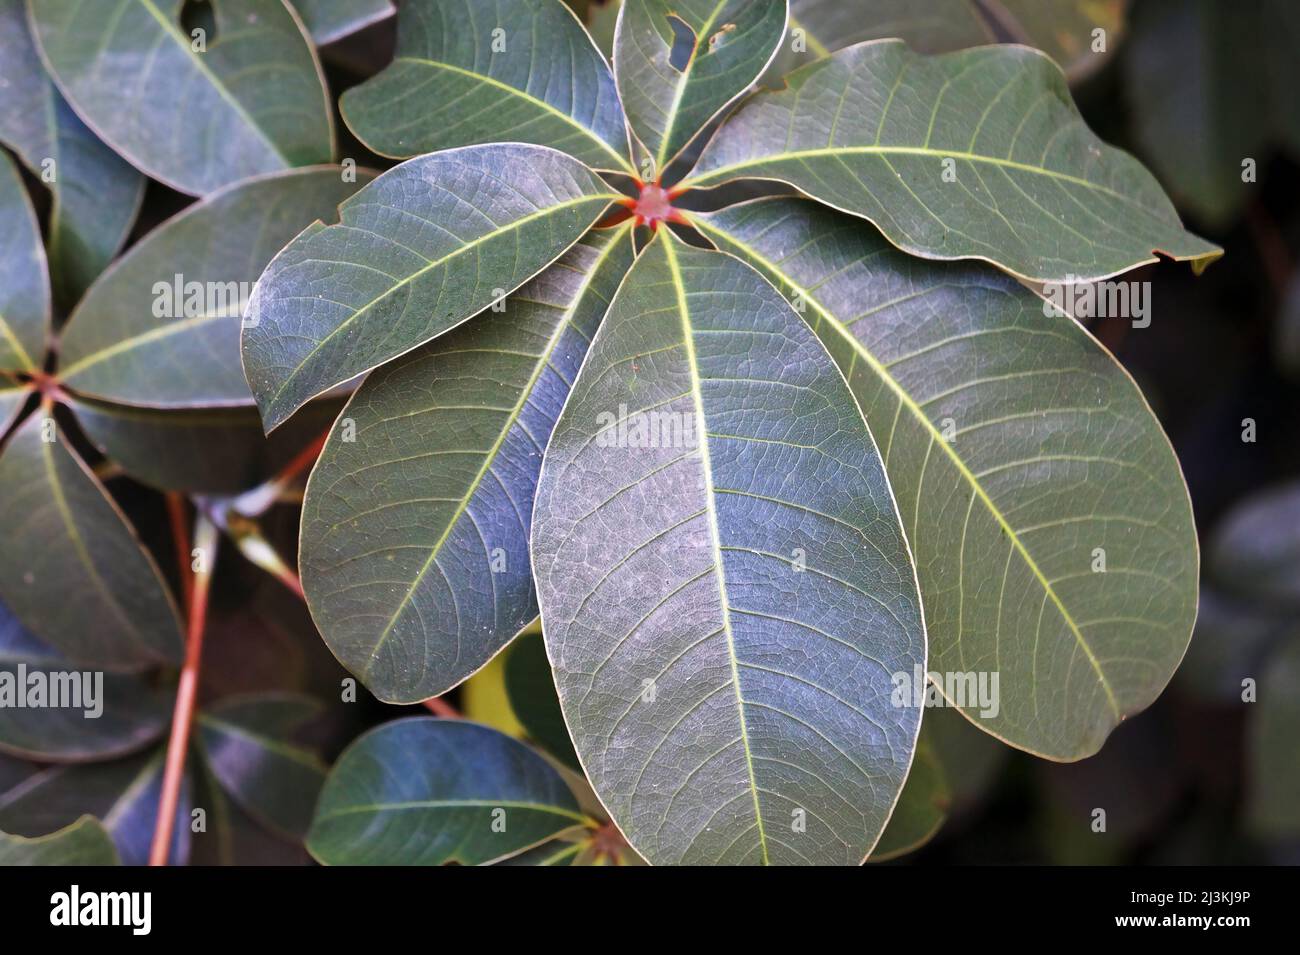 Queensland umbrella tree leaf or octopus tree leaf (Heptapleurum actinophyllum) Stock Photo